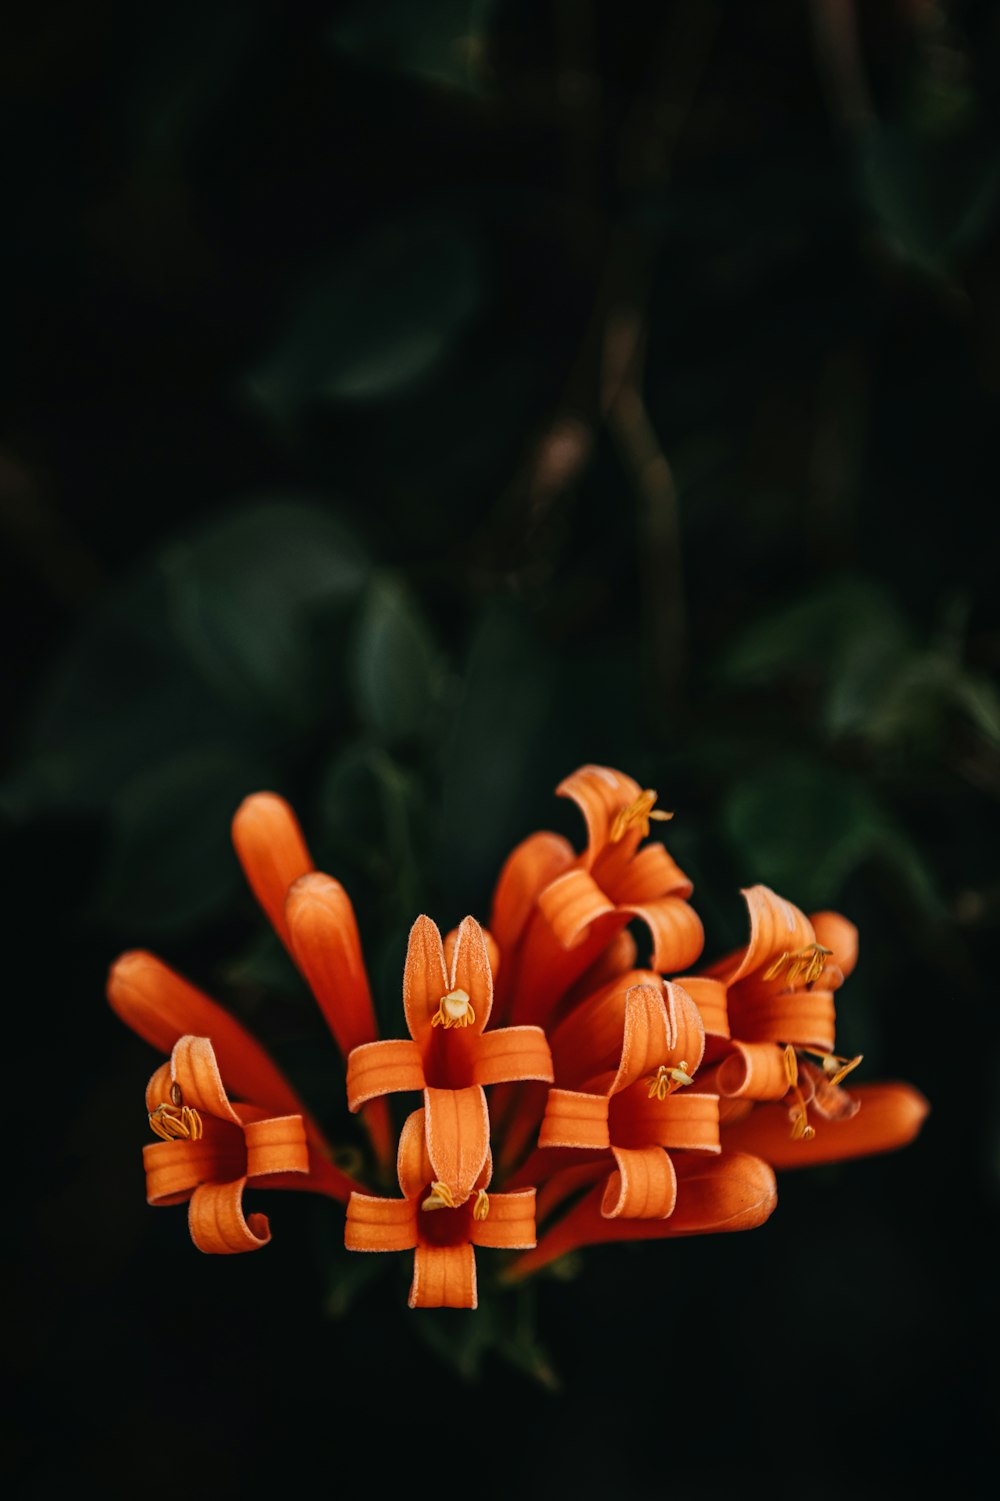 fiore d'arancio nell'obiettivo tilt shift